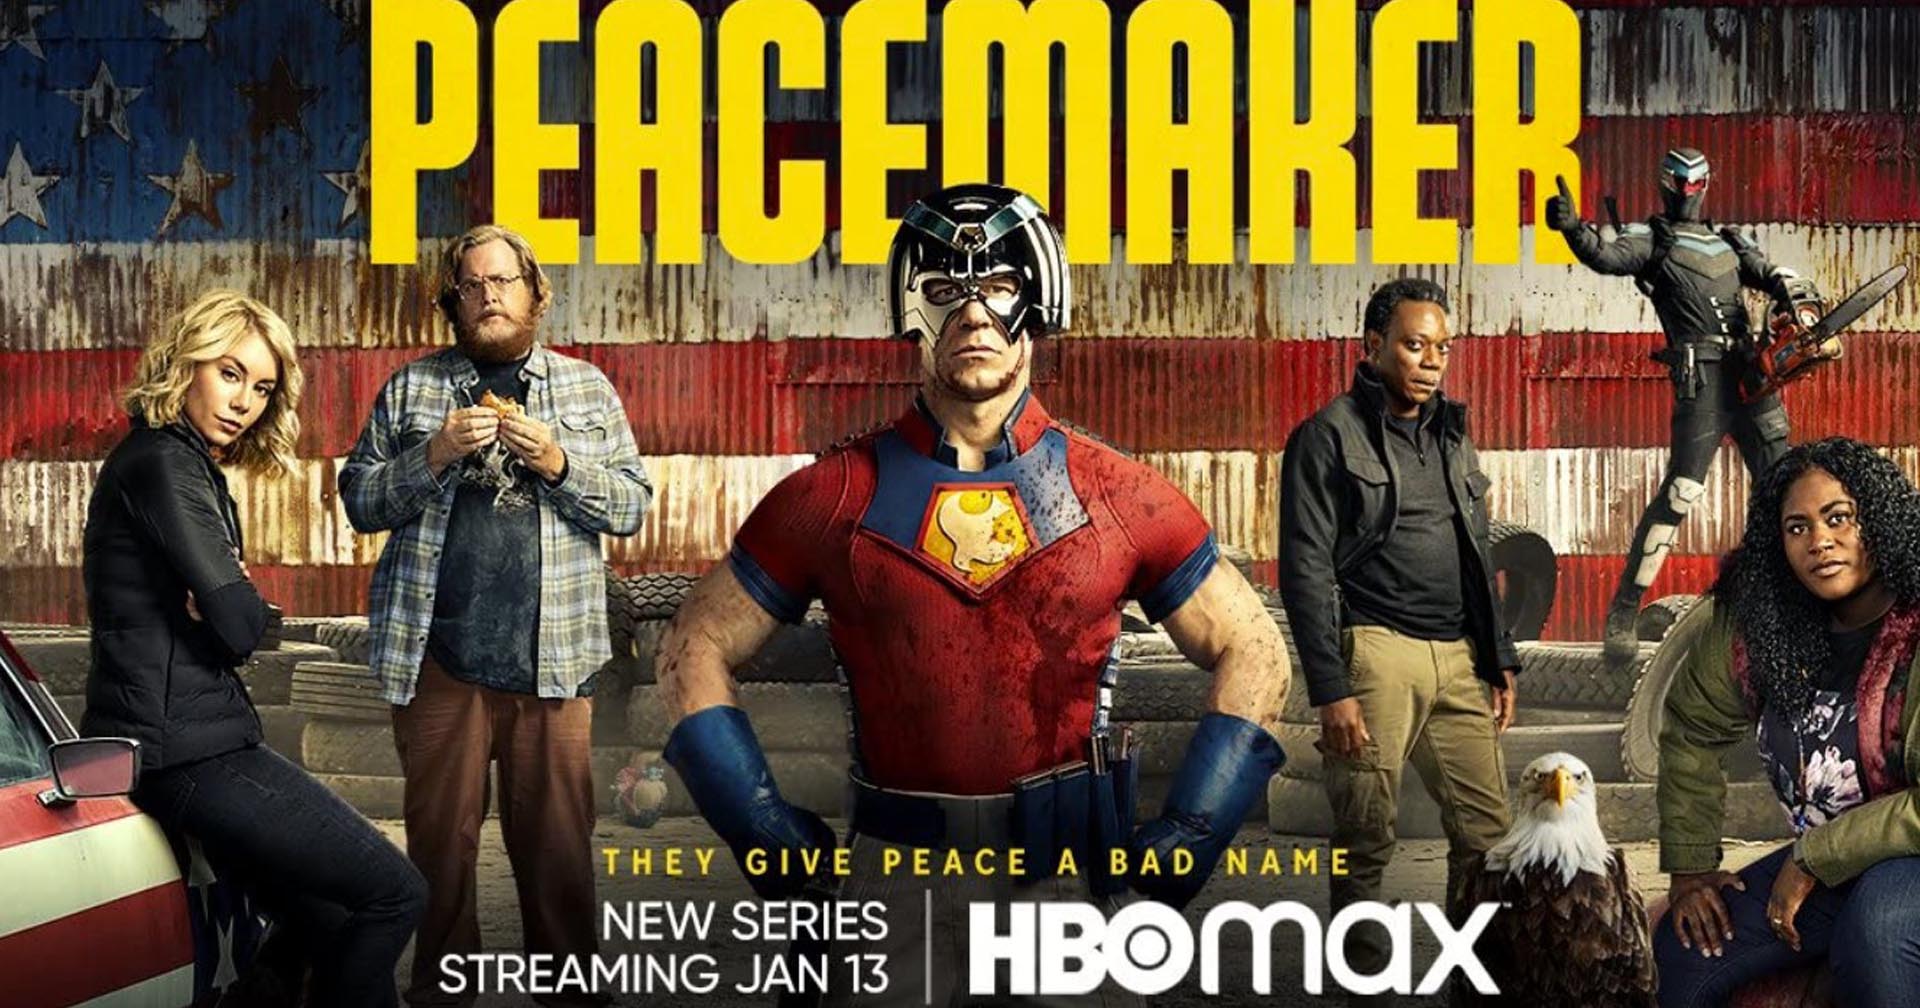 ซีรีส์ ‘Peacemaker’ เตรียมฉายทาง HBO Go และ HBO Max วันแรกรับชมจุใจ 3 ตอนจุก ๆ